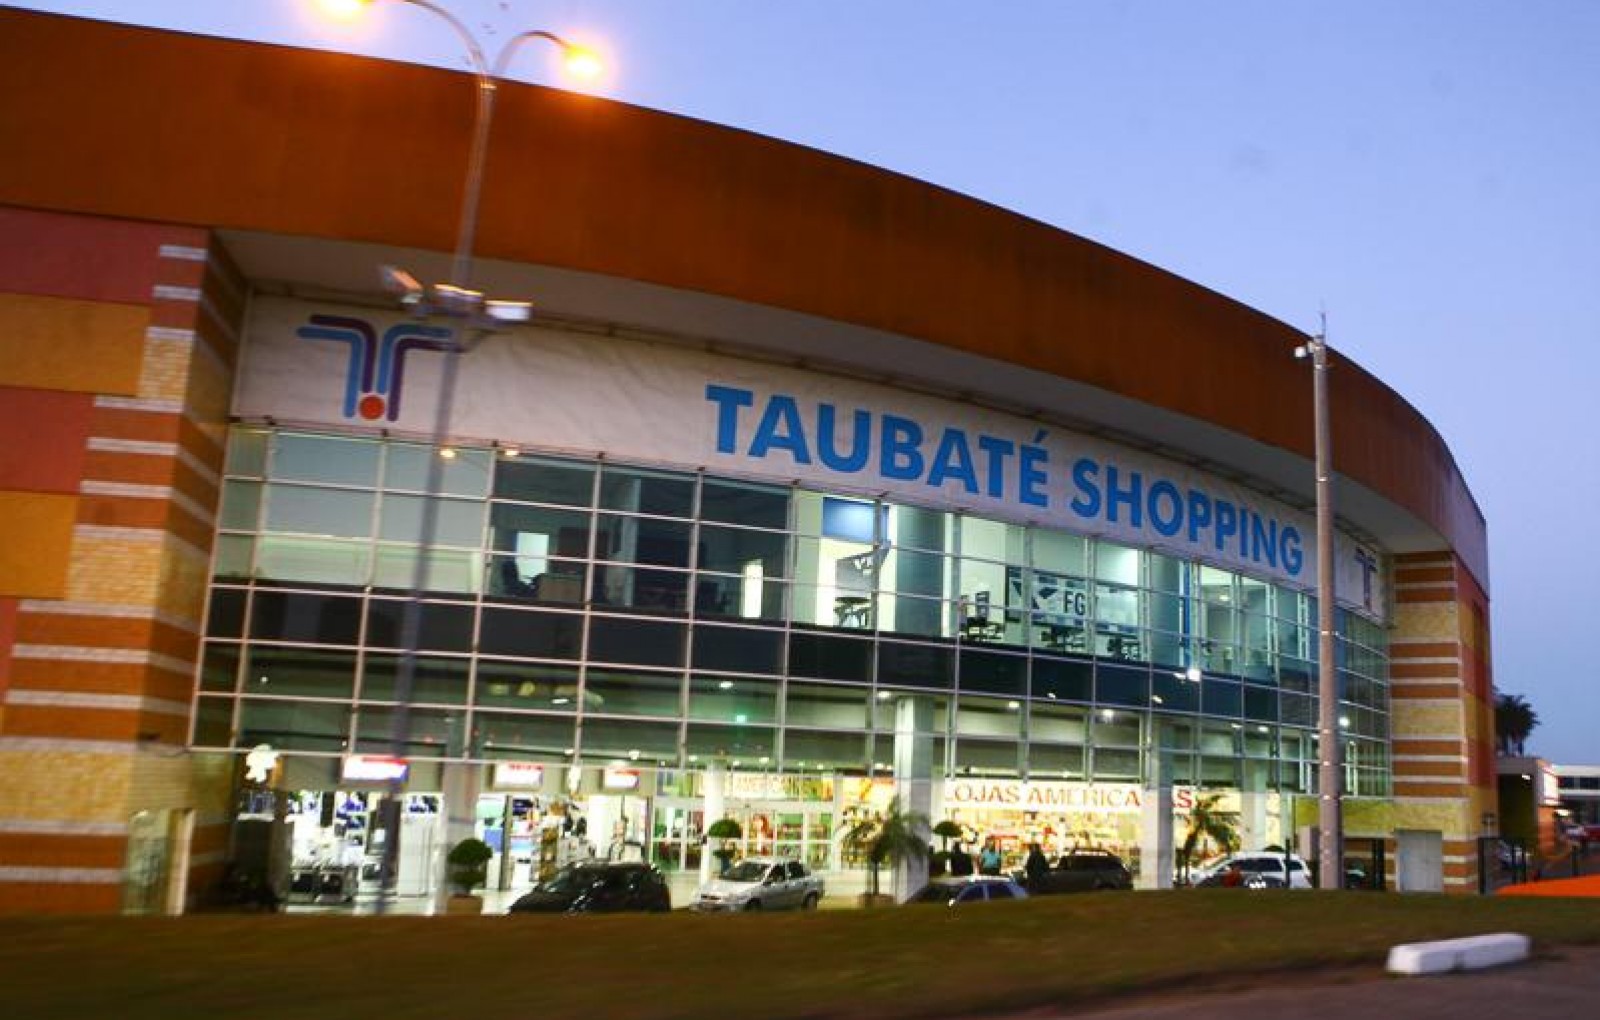 Taubaté Shopping recebe exposição  “Coroas – símbolo de legitimidade e poder”